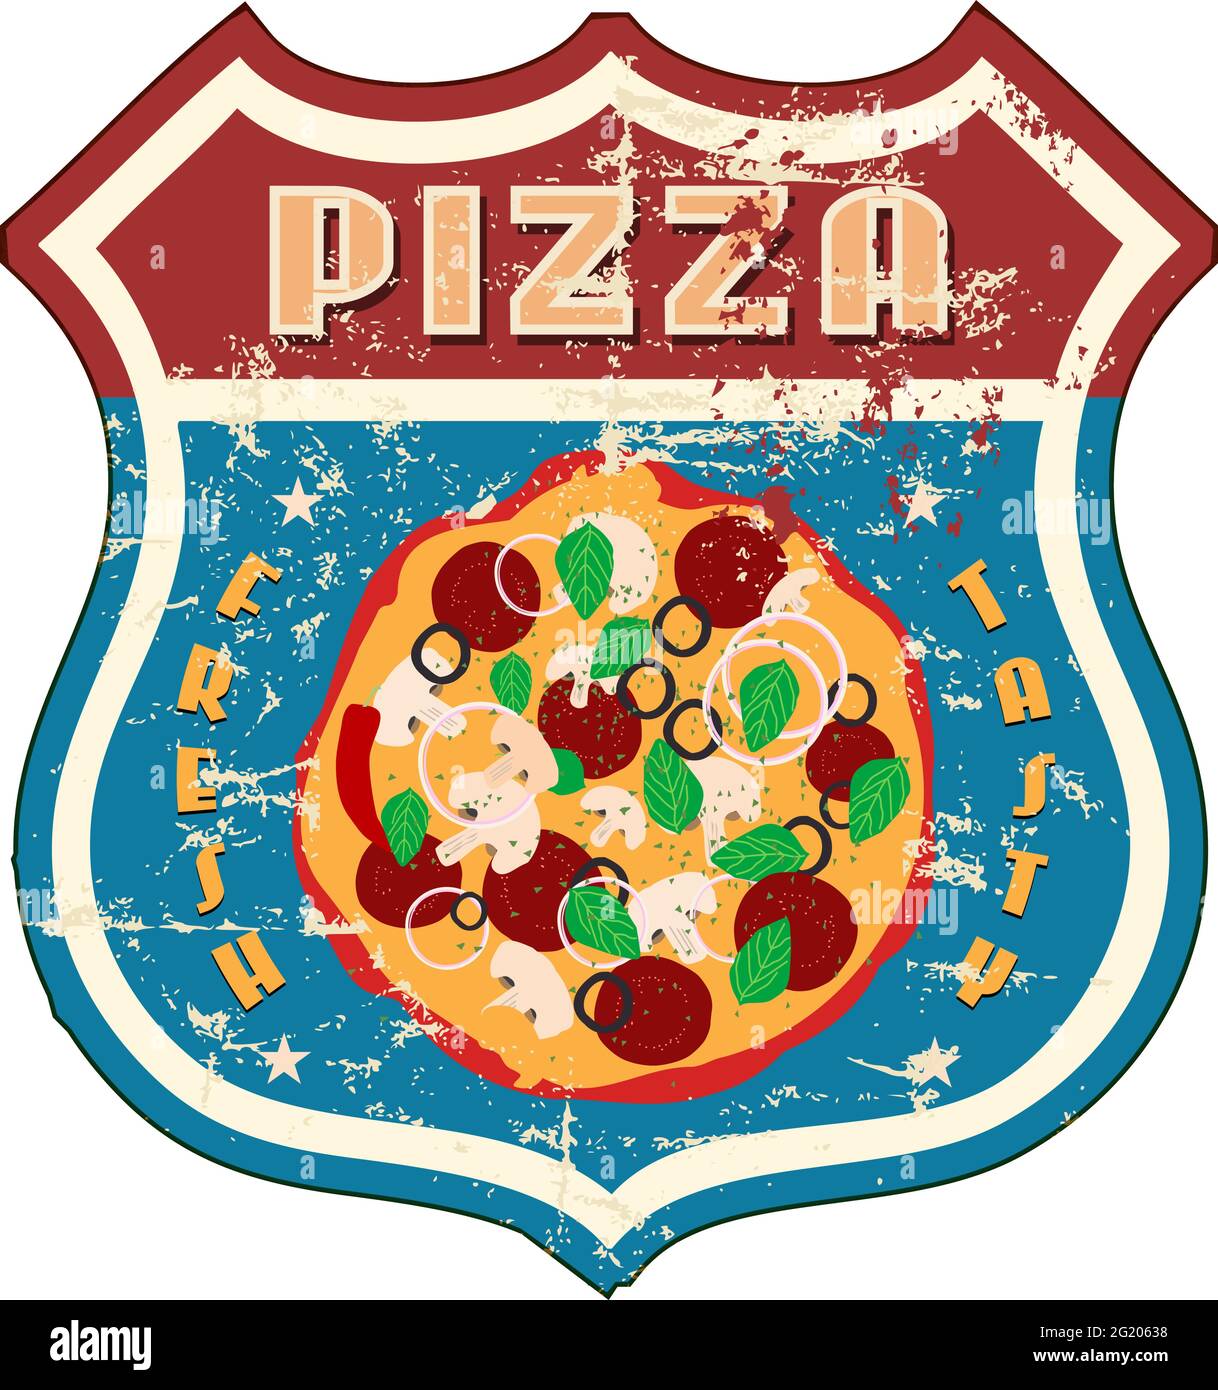 pizza nostalgique vintage et affiche de restauration rapide, illustration vectorielle, œuvres d'art fictives. Illustration de Vecteur